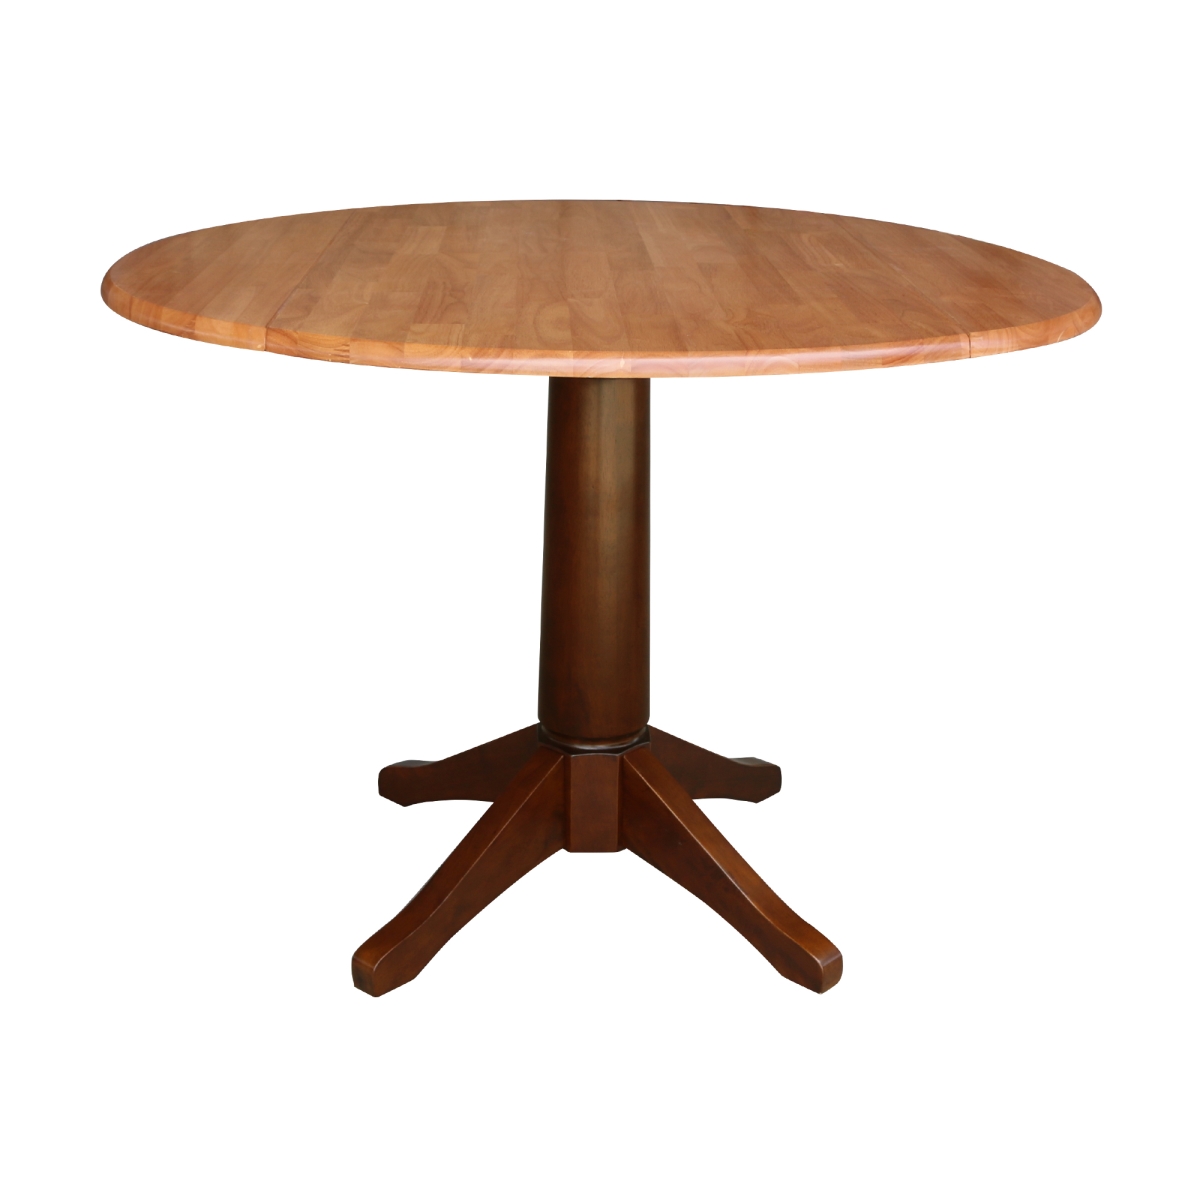 K58-42dpt-27b 42 In. Round Dual Drop Leaf Pedestal Table - 30.3 In. - Cinnemon & Espresso